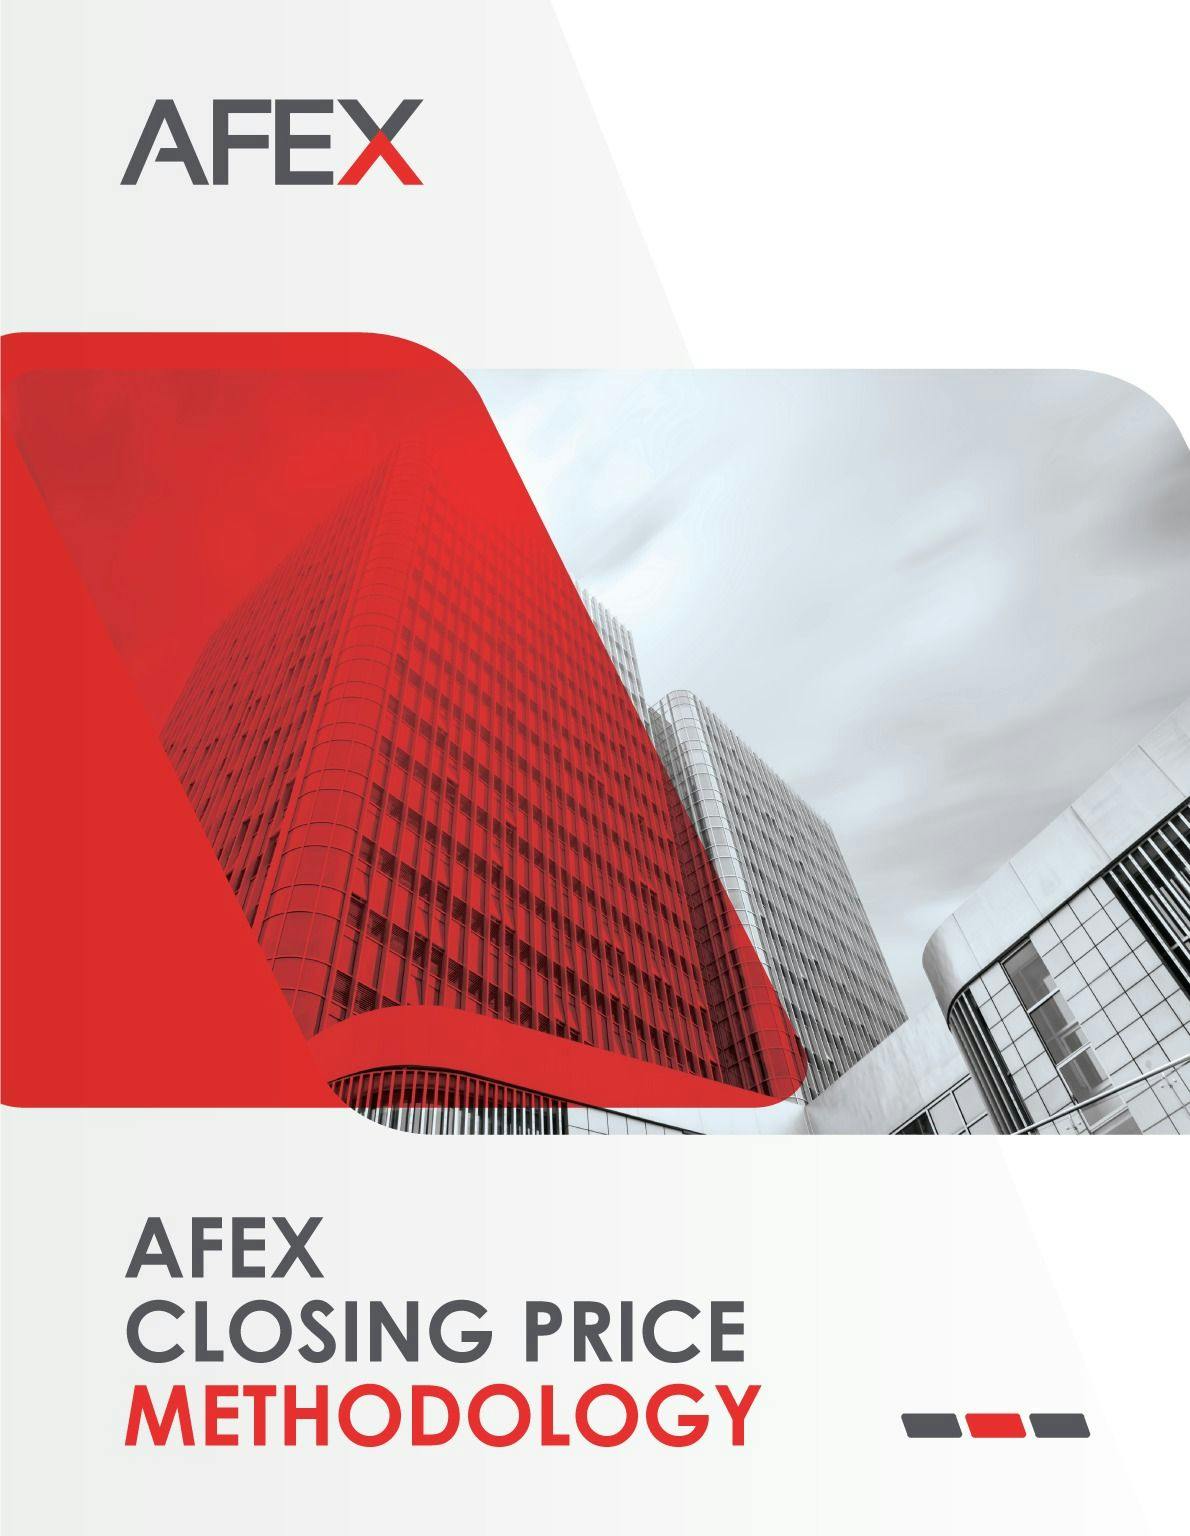 AFEX Operating Index Framework